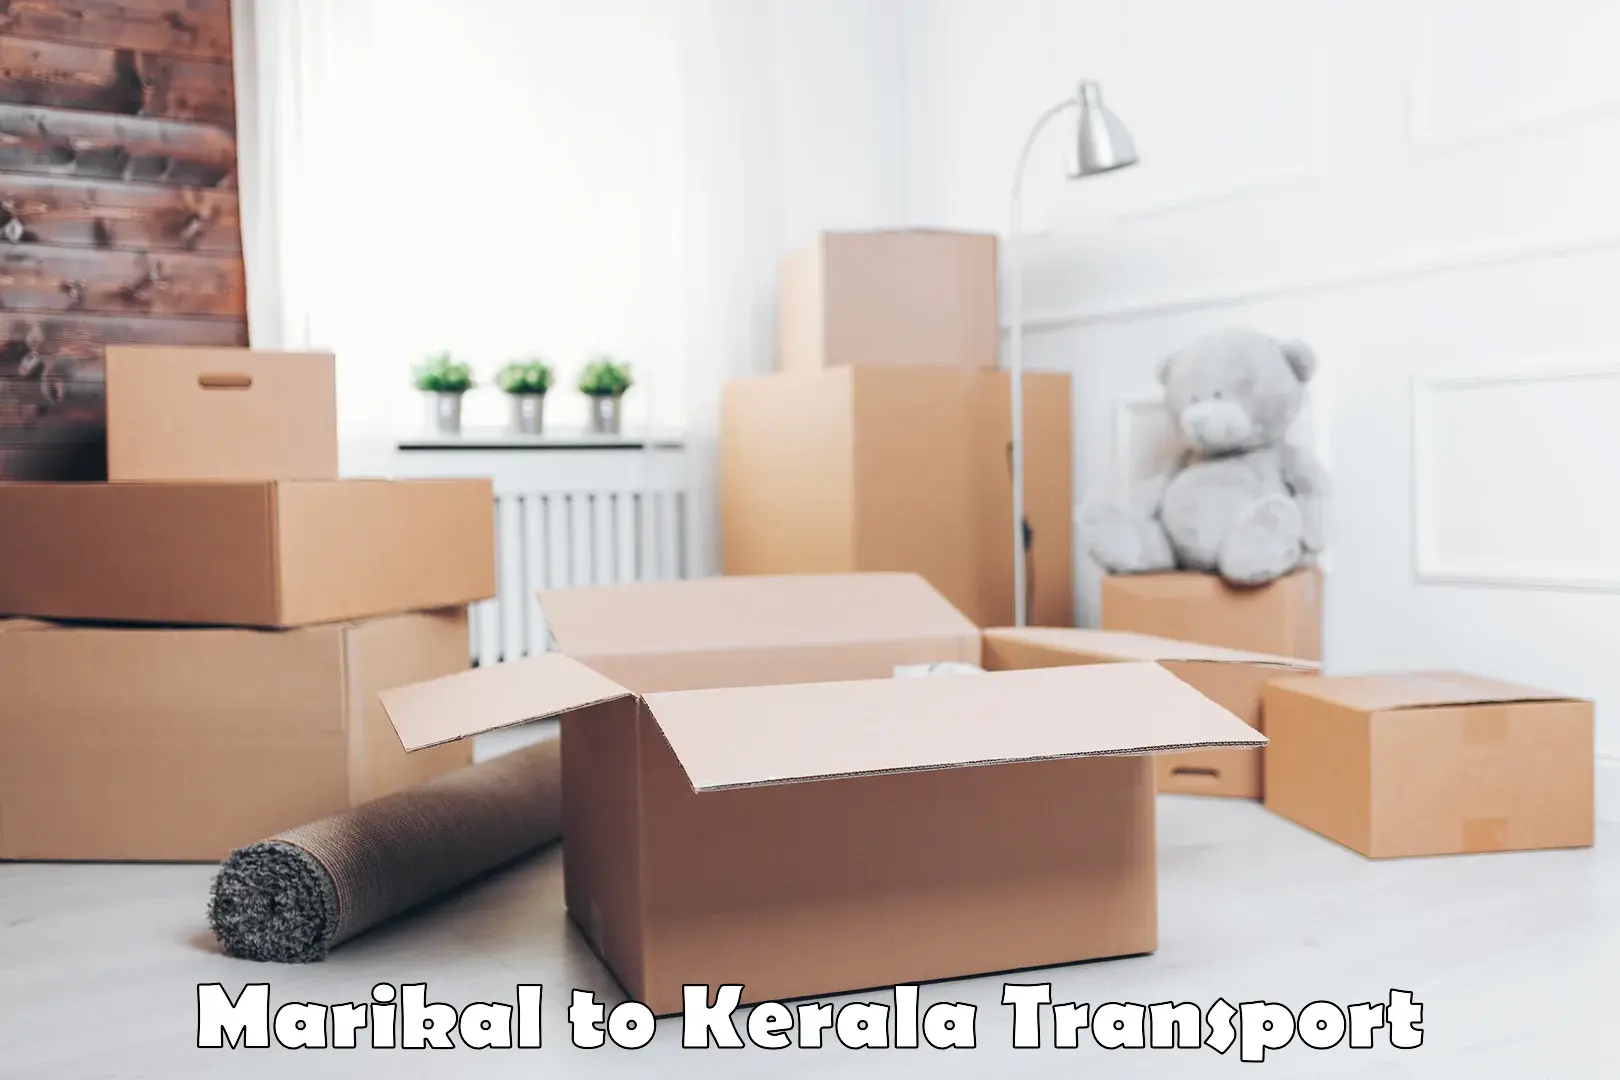 Scooty parcel Marikal to Kallachi